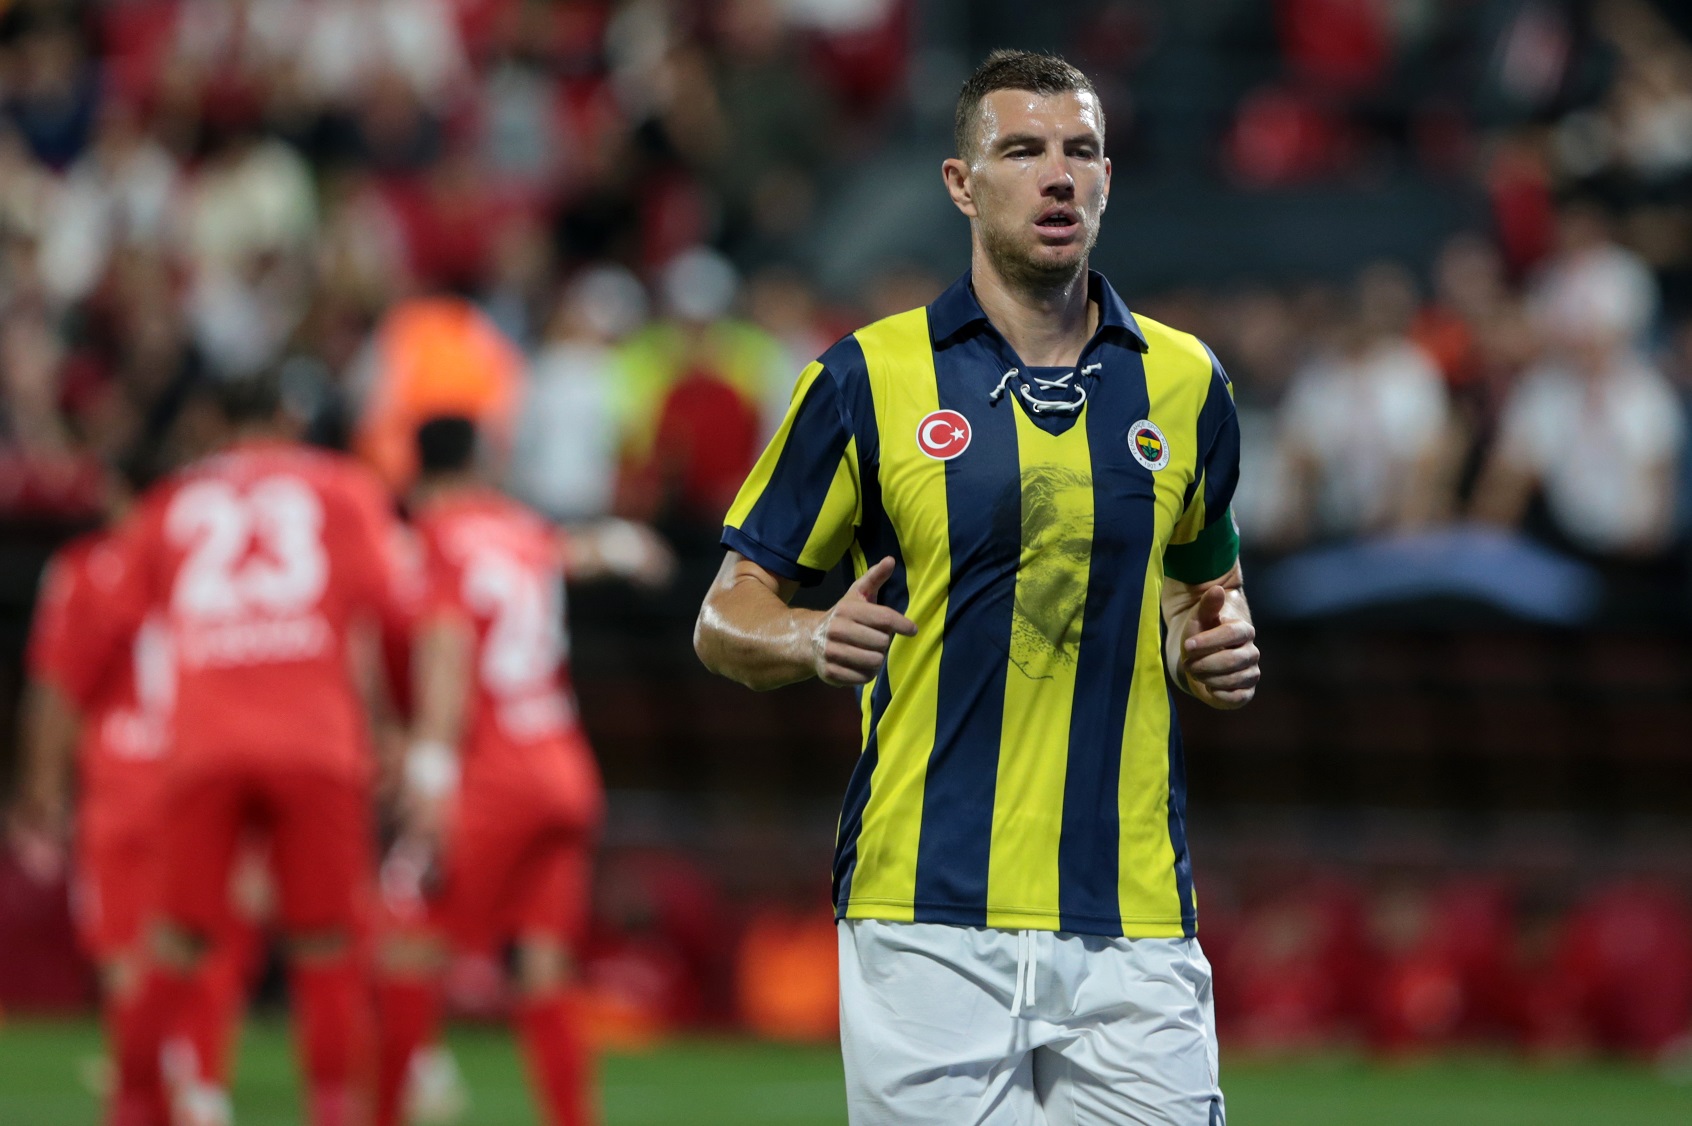 Transfer iddiasına şok yalanlama! Fenerbahçe’ye gitmeyecek